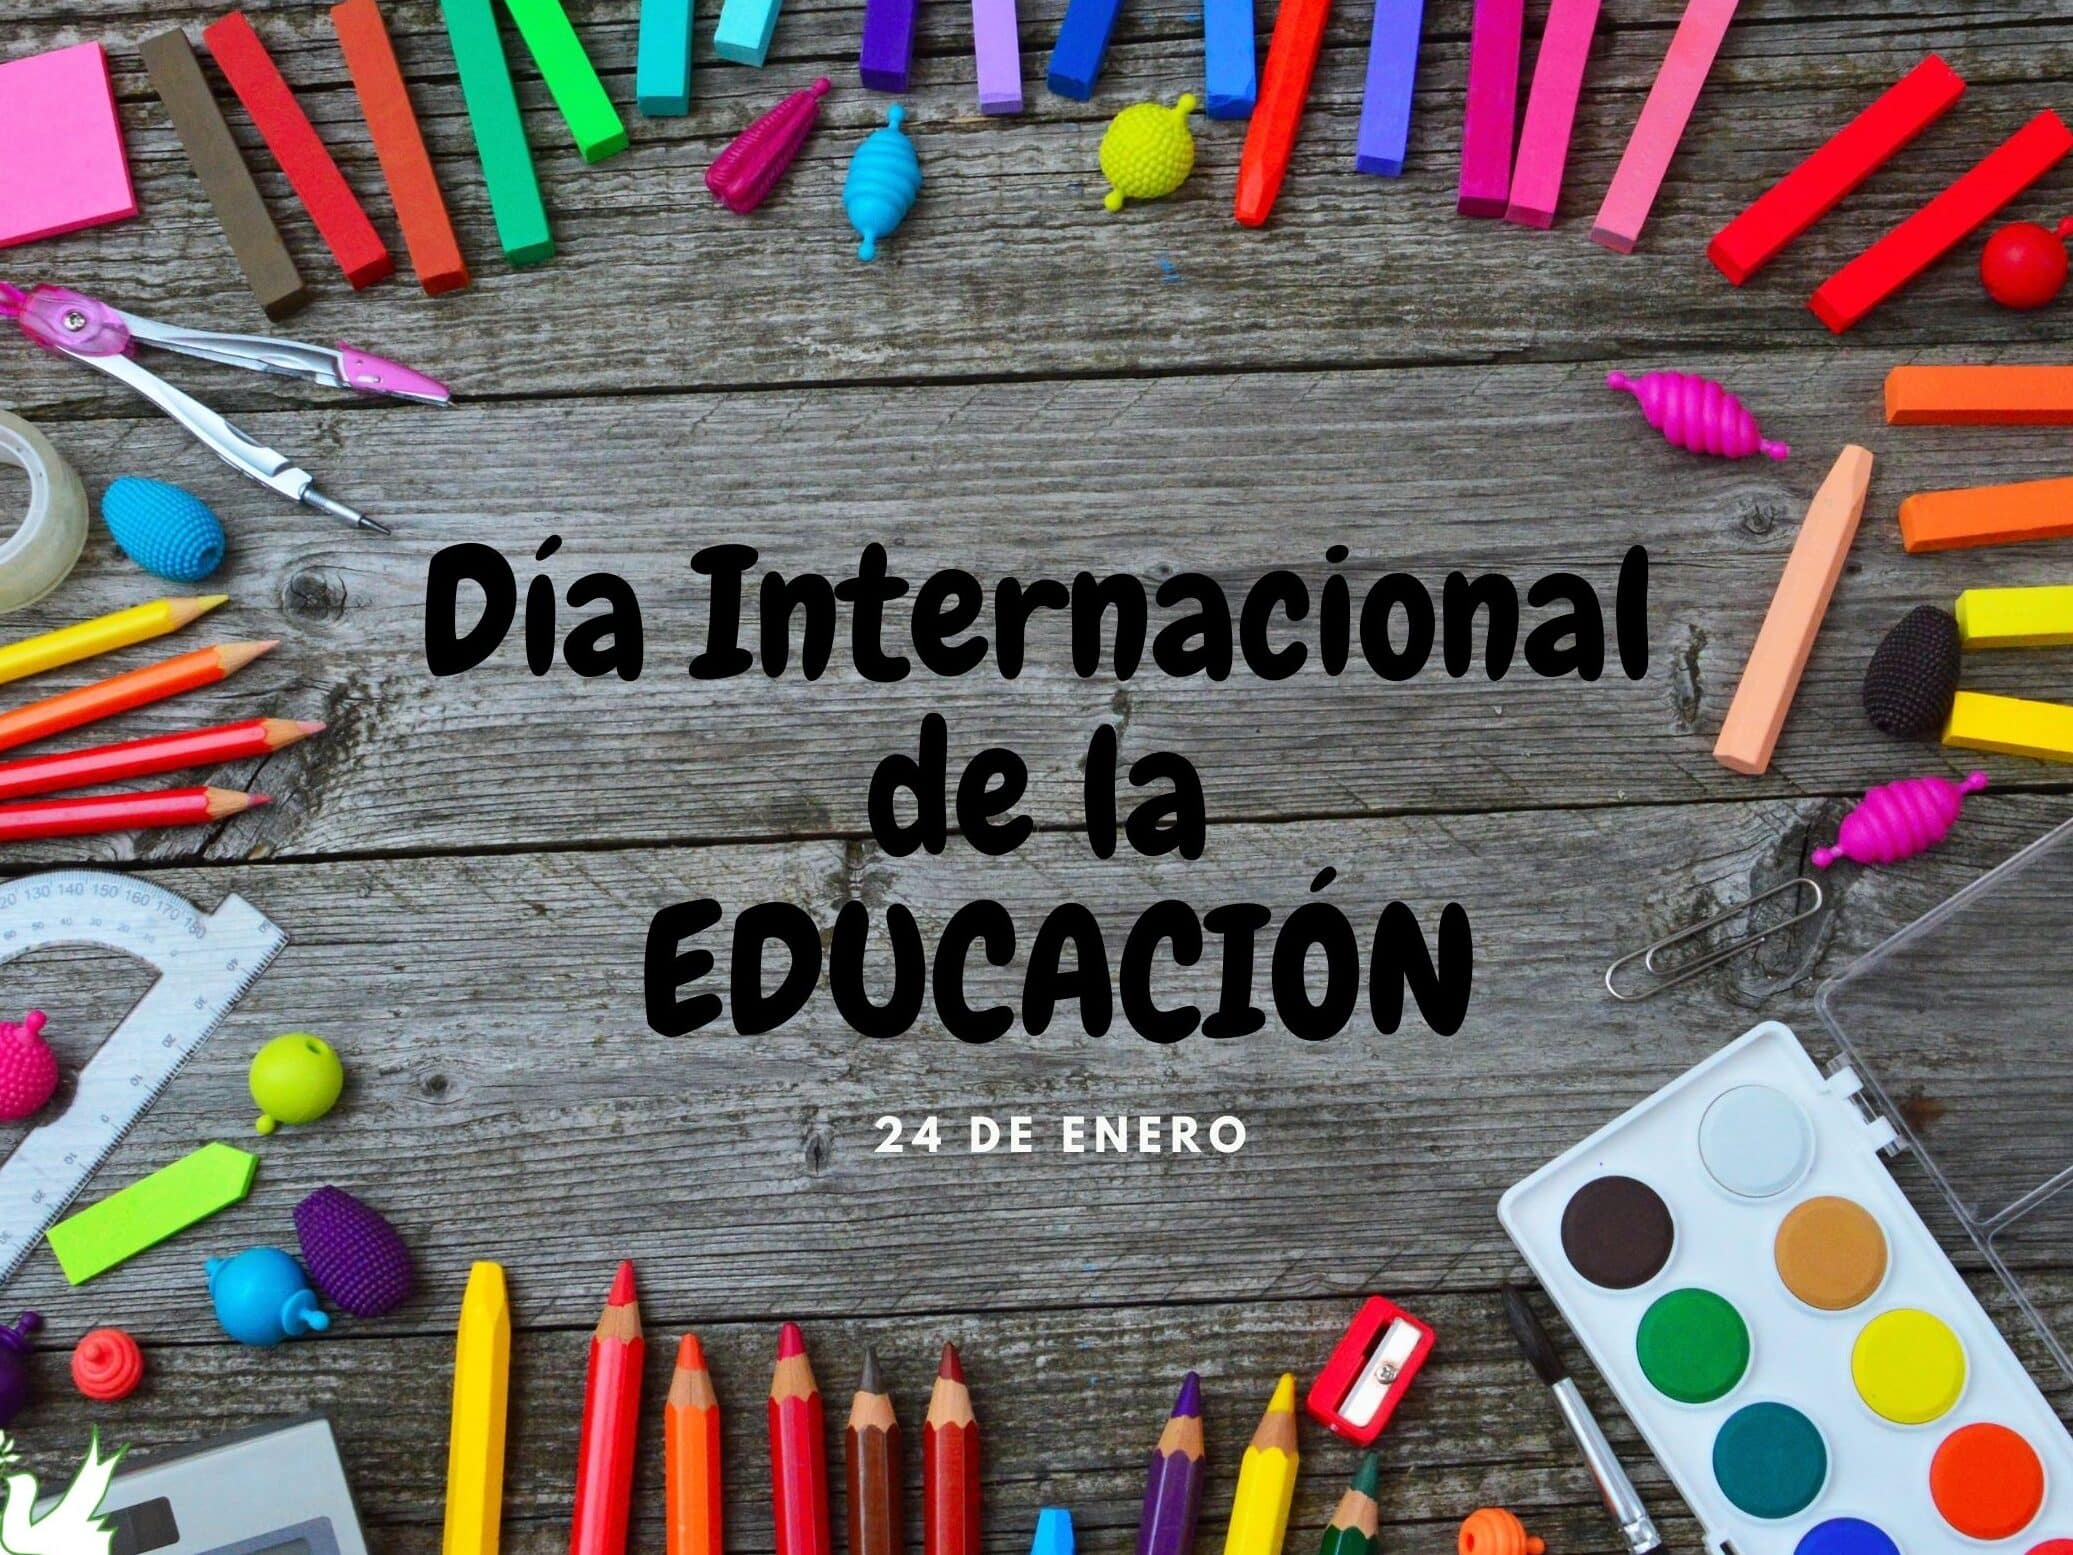 dia internacional de la educacion 24 de enero